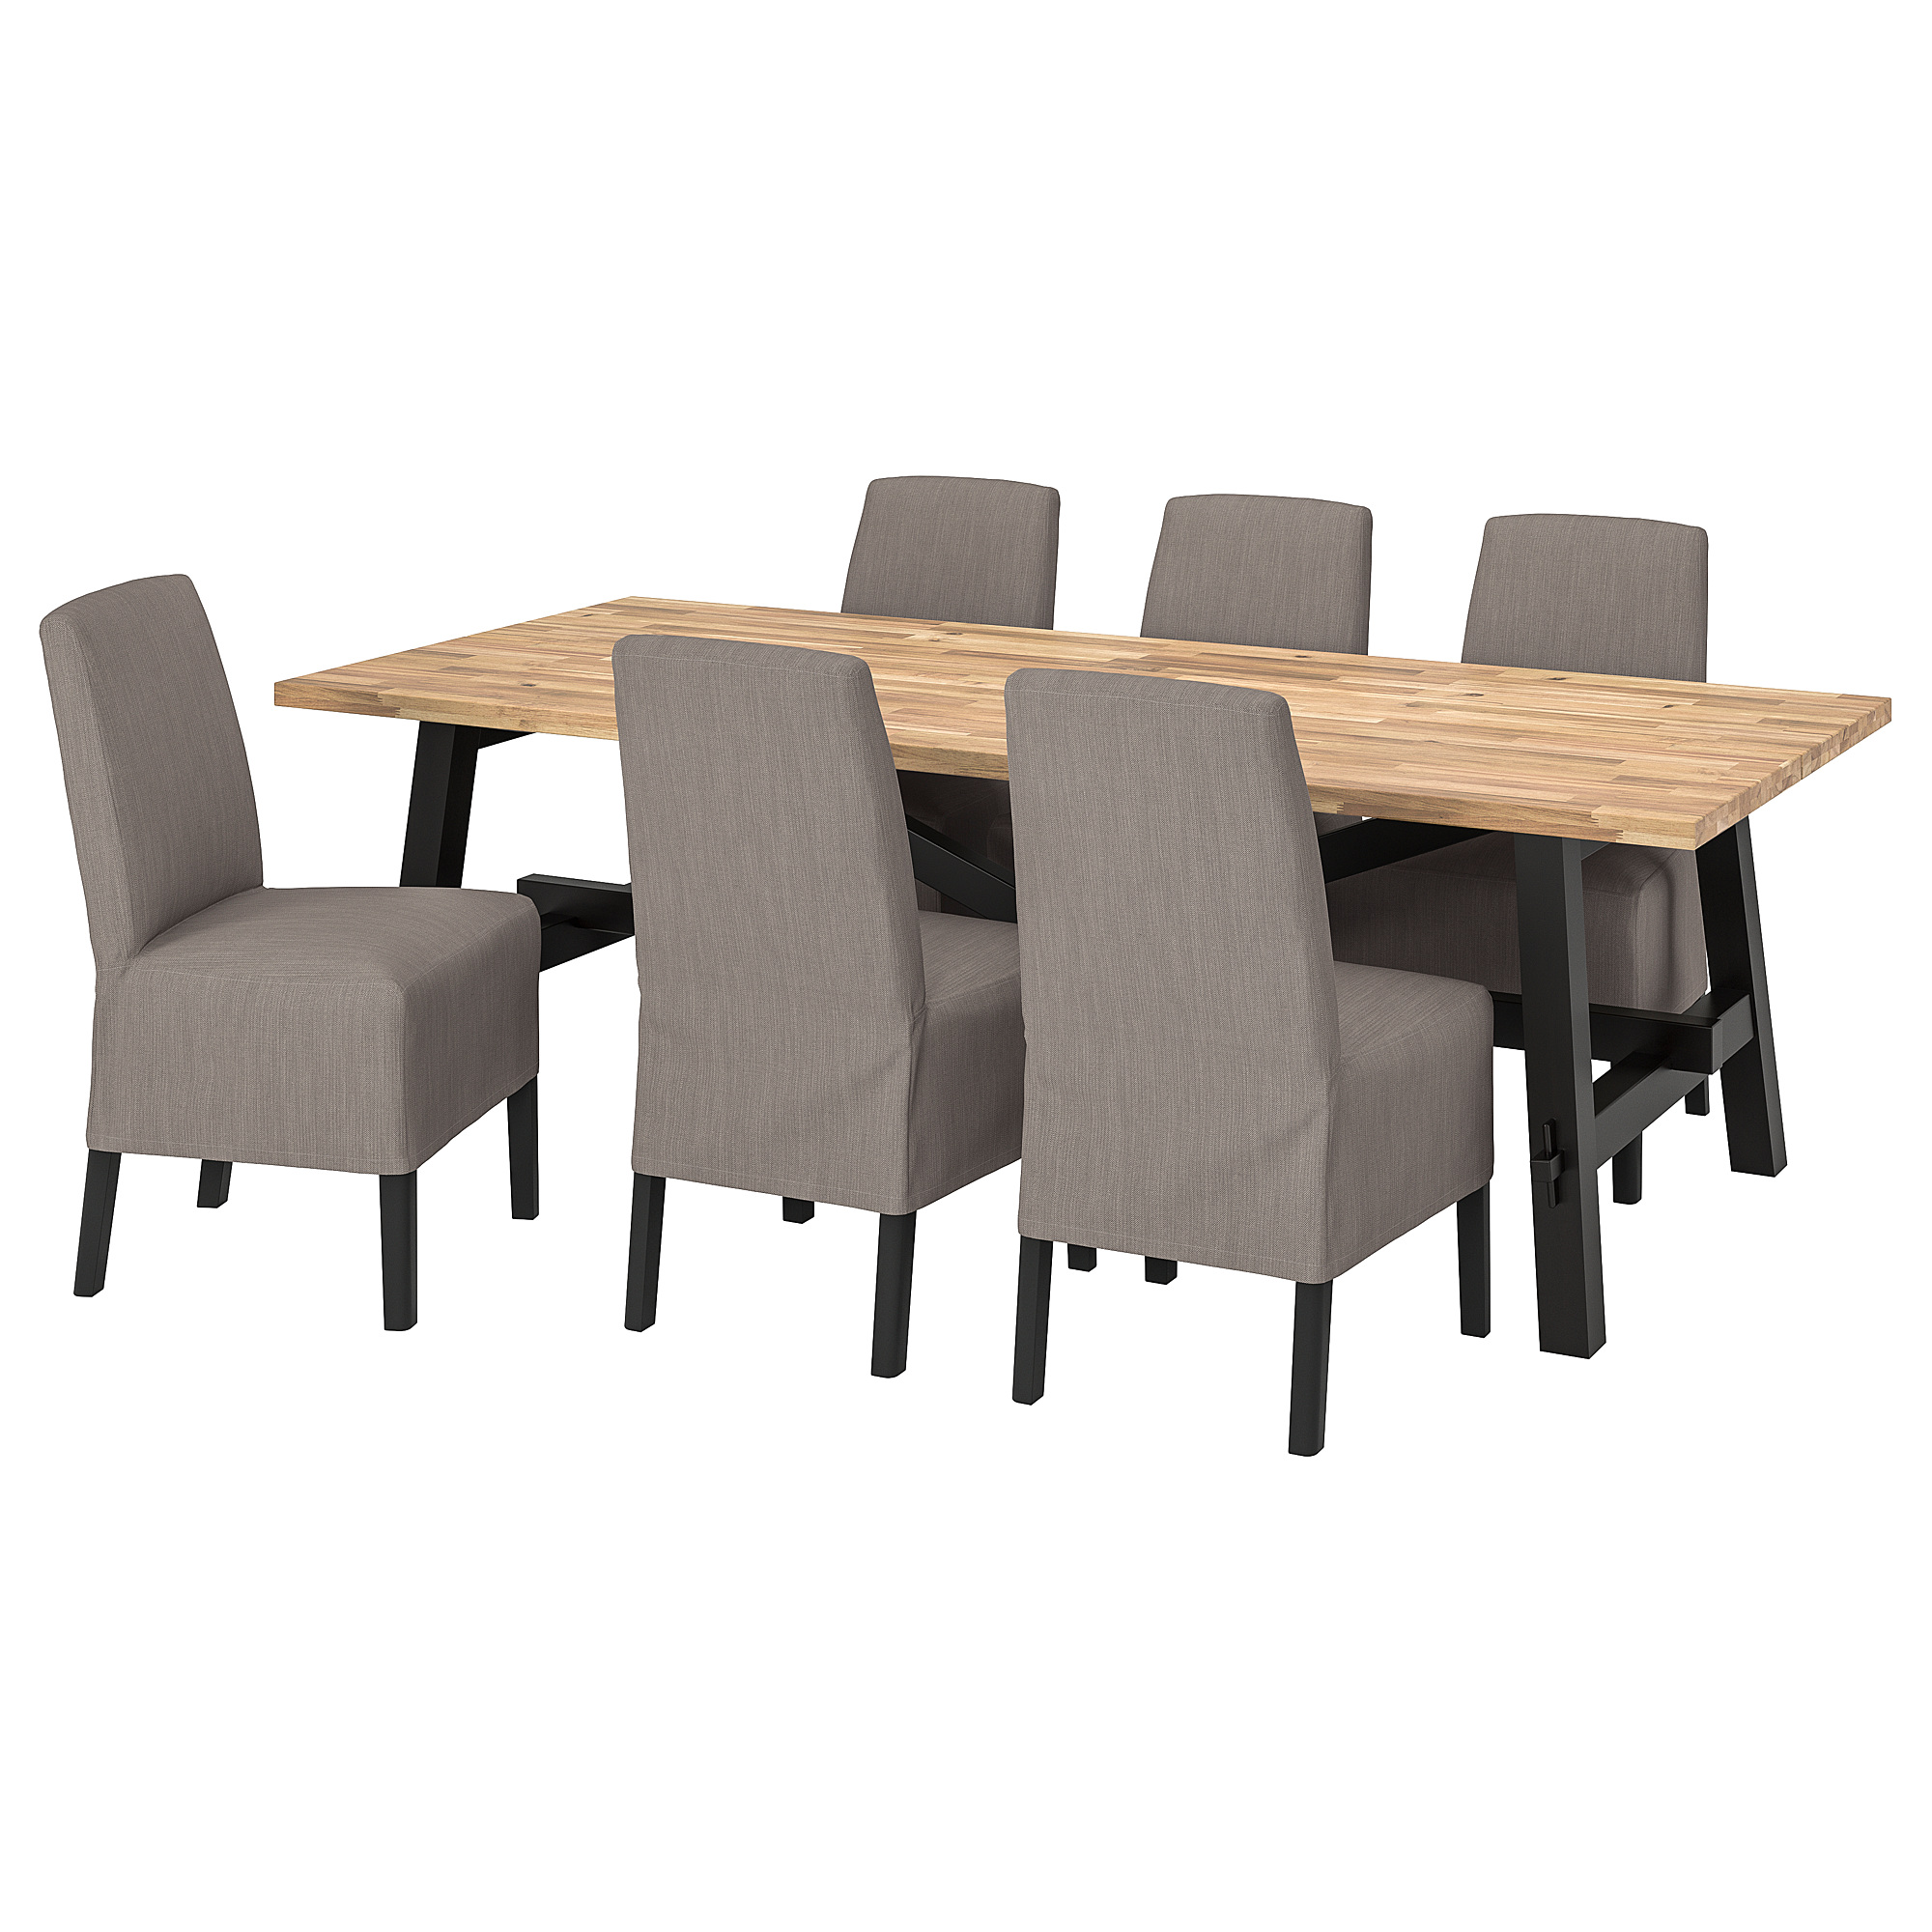 SKOGSTA/BERGMUND table and 6 chairs